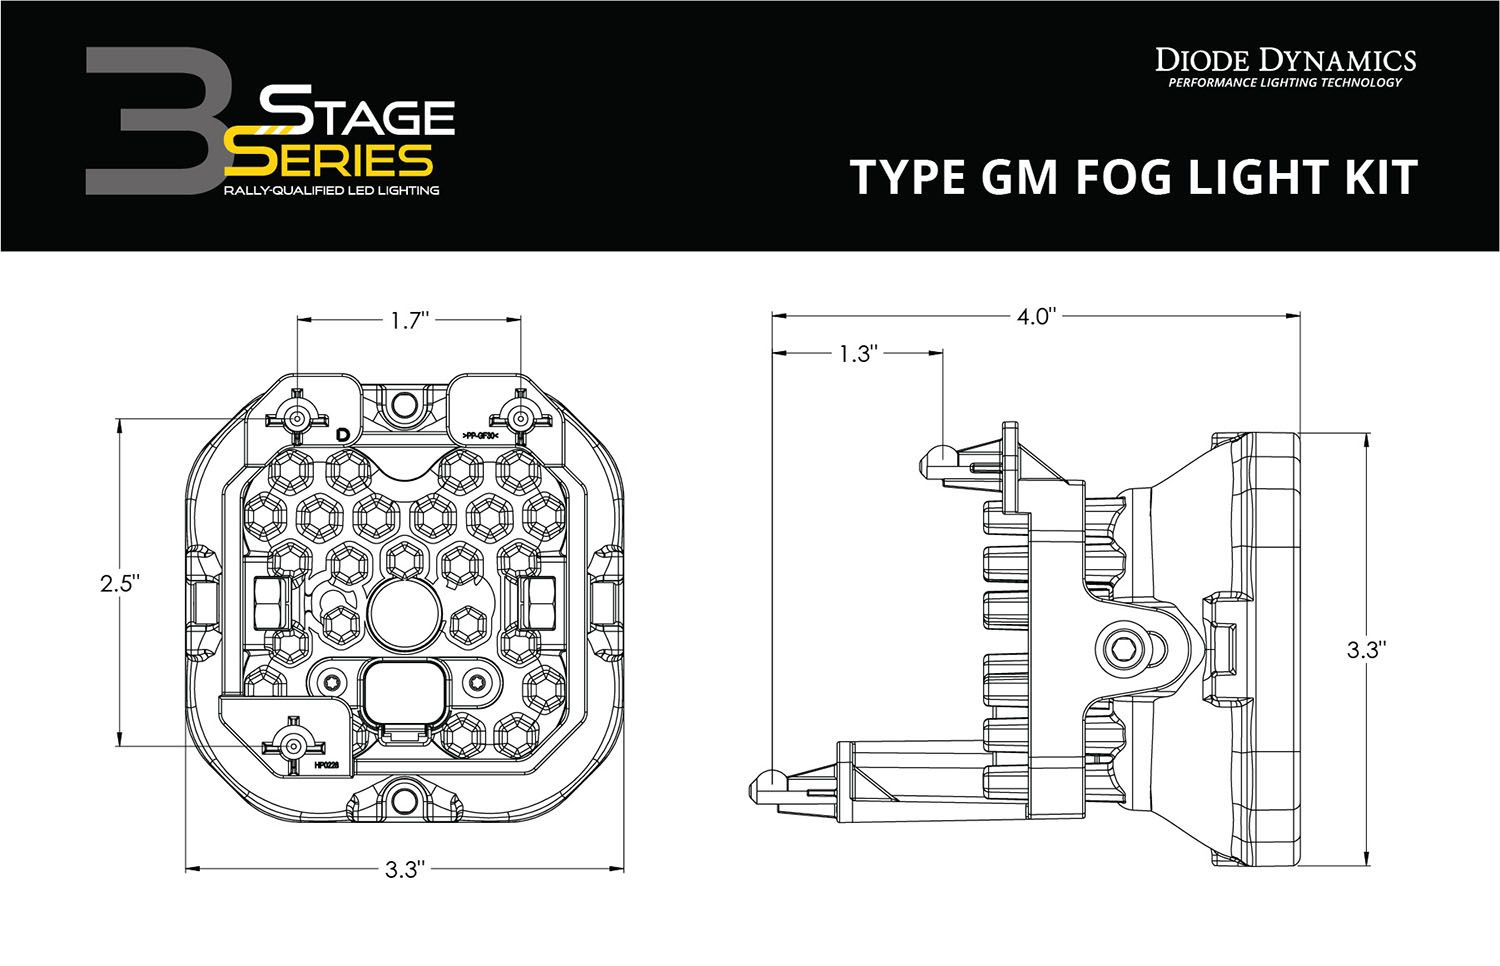 SS3 LED Fog Light Kit For 2010 Pontiac G6